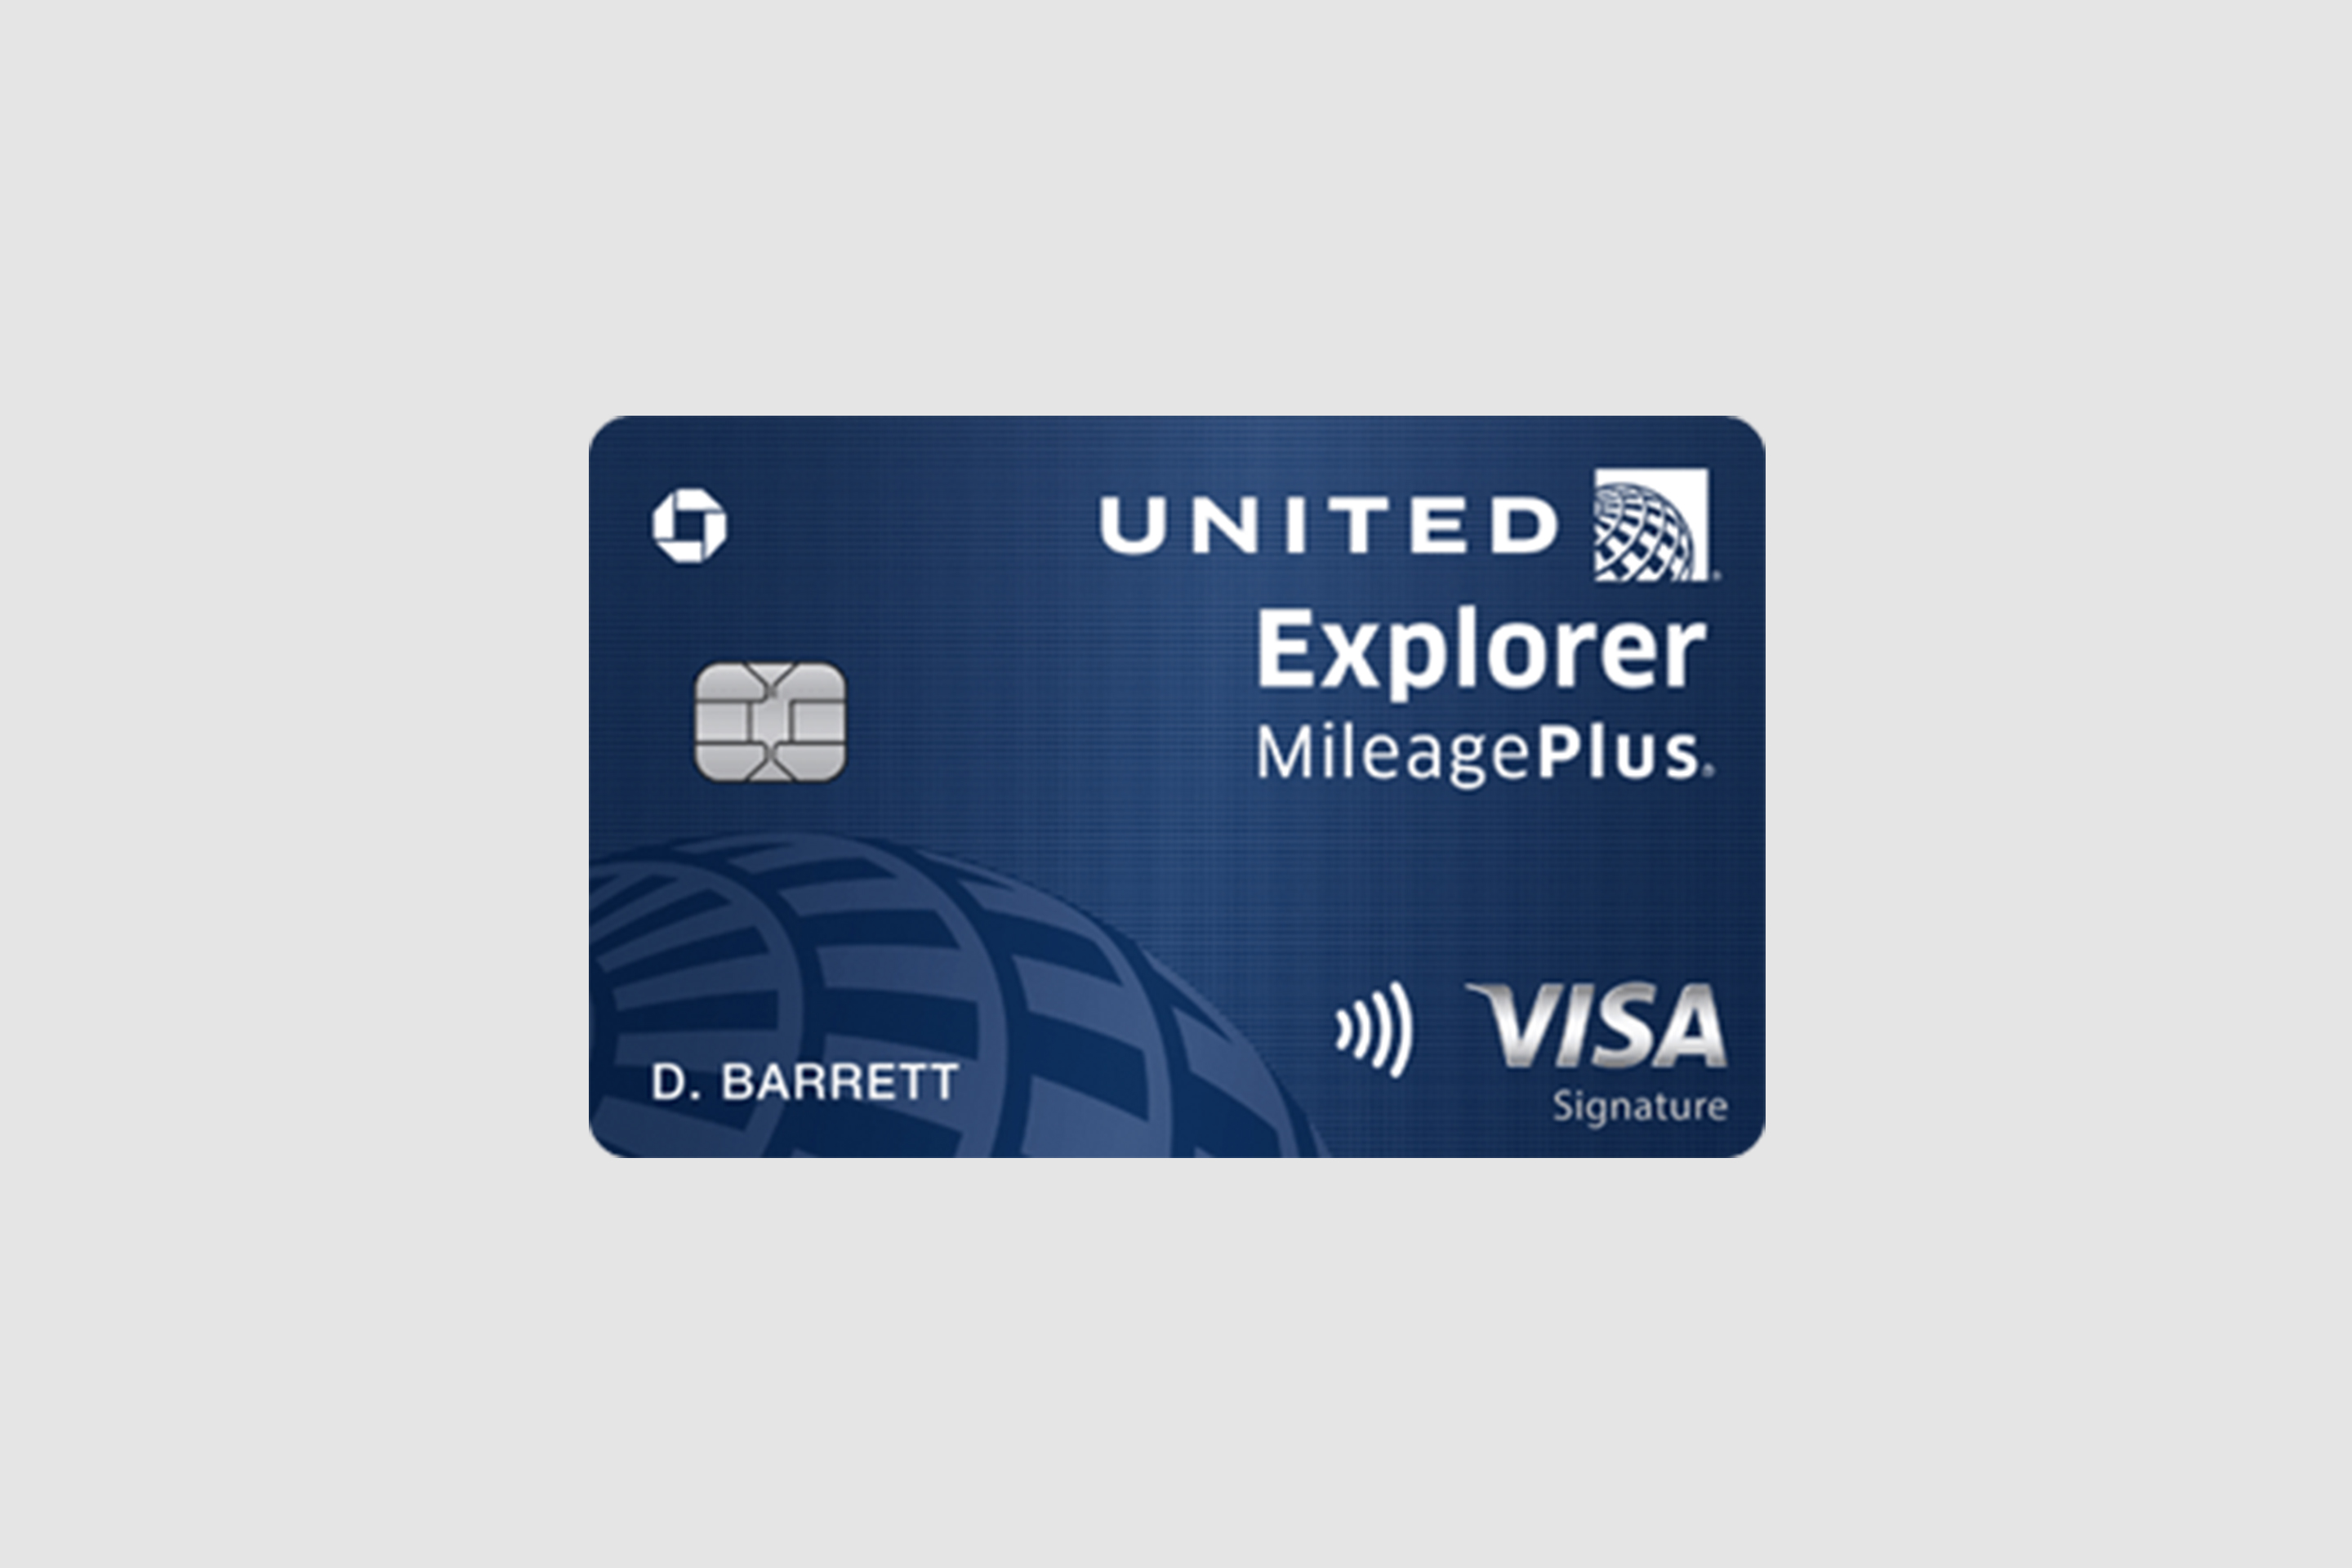 United Explorer Mileage Plus Credit Card